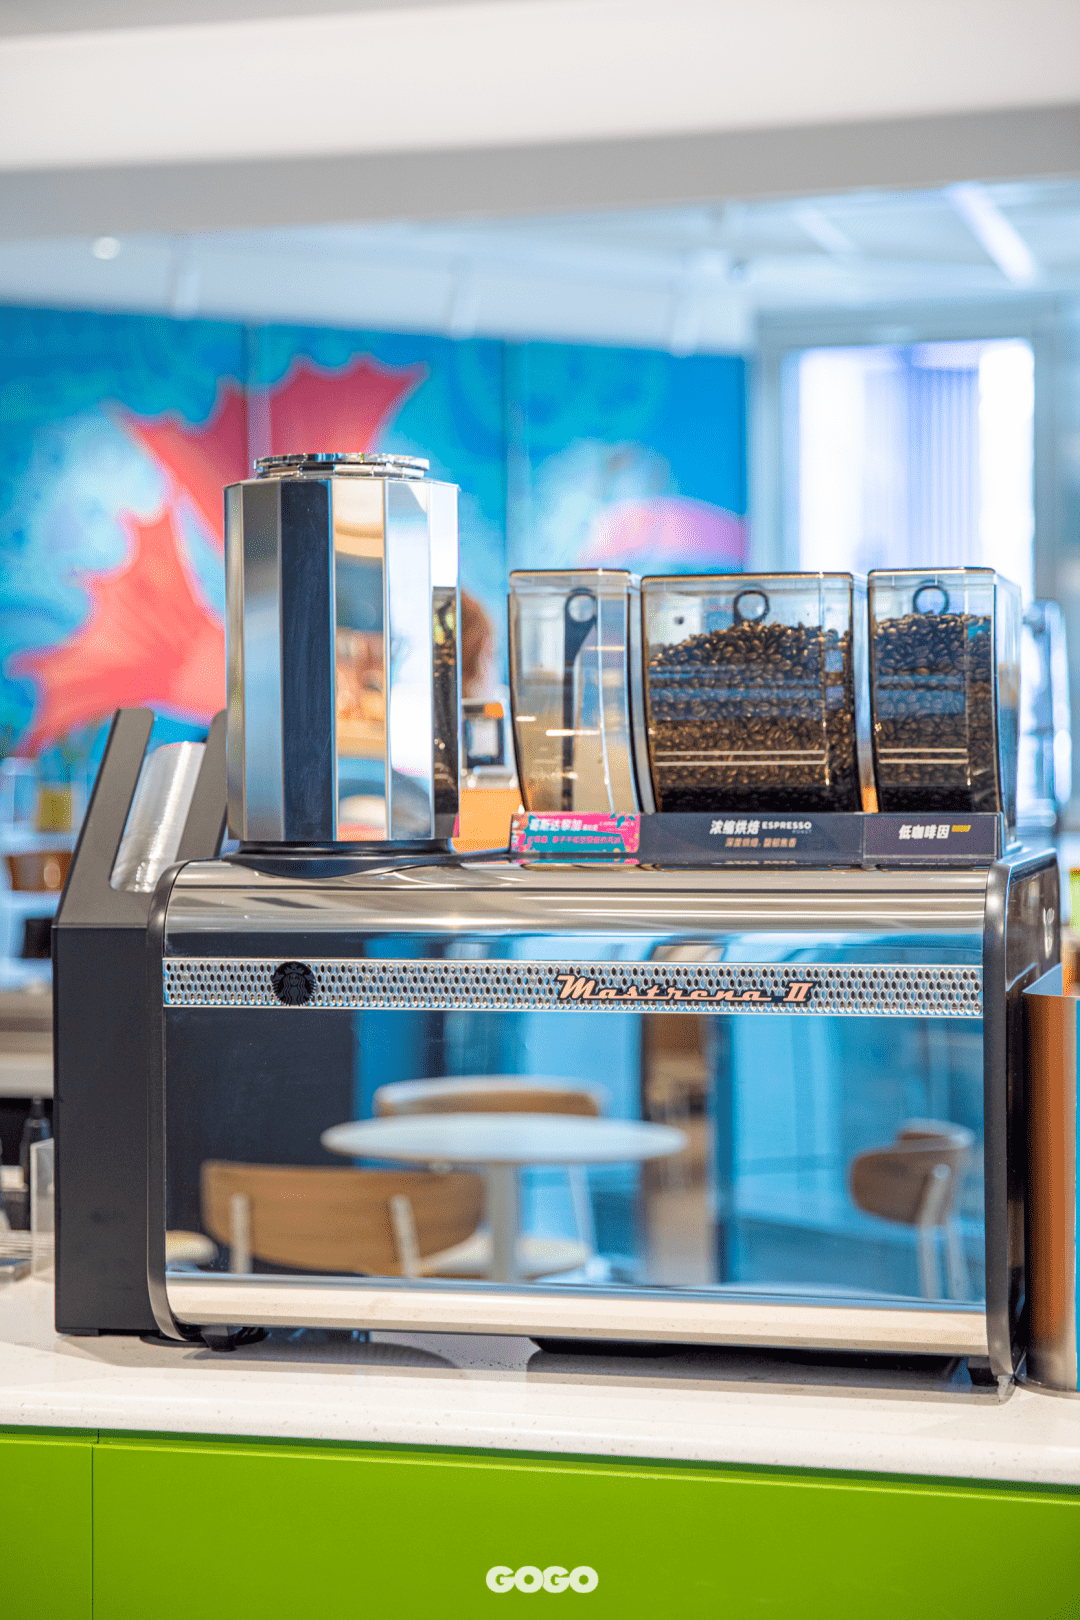 店里有3台mastrena 2咖啡机 还提供品质出众,风味独特的星巴克臻选